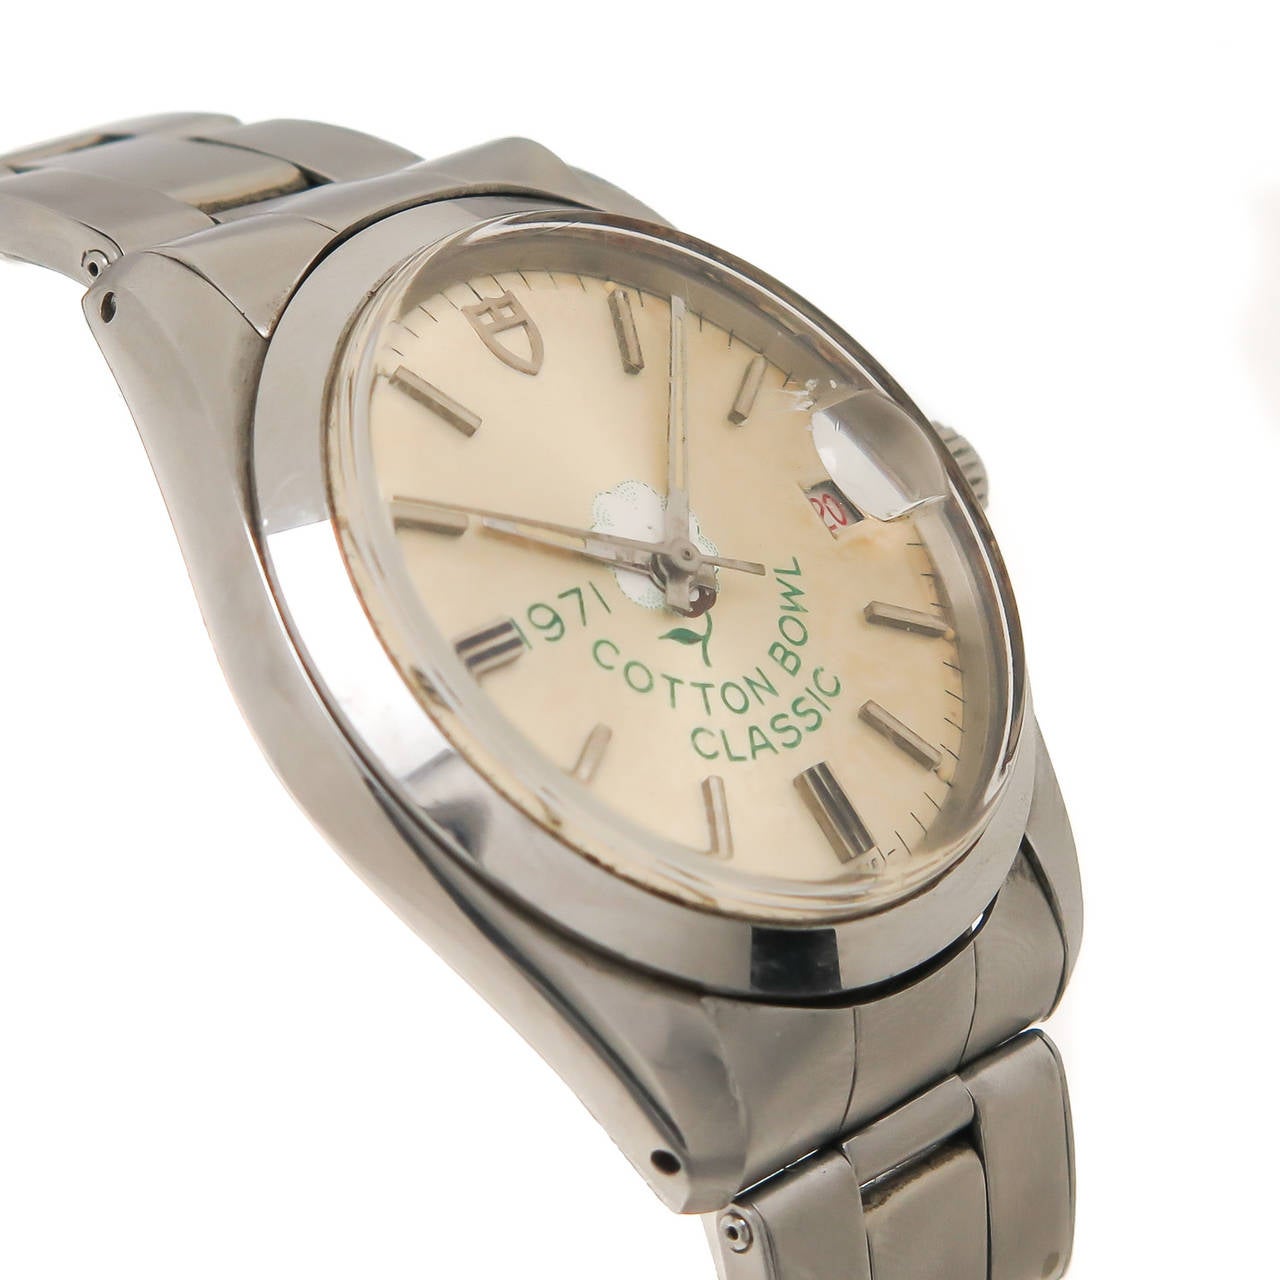 Tudor By Rolex 1971 Oyster Prince model:: Cotton Bowl Classic Wrist Watch. 34 MM Boîtier étanche en acier inoxydable Mouvement automatique à remontage automatique de 25 rubis. Cristal acrylique avec bulle sur la fenêtre de la date en position 3.